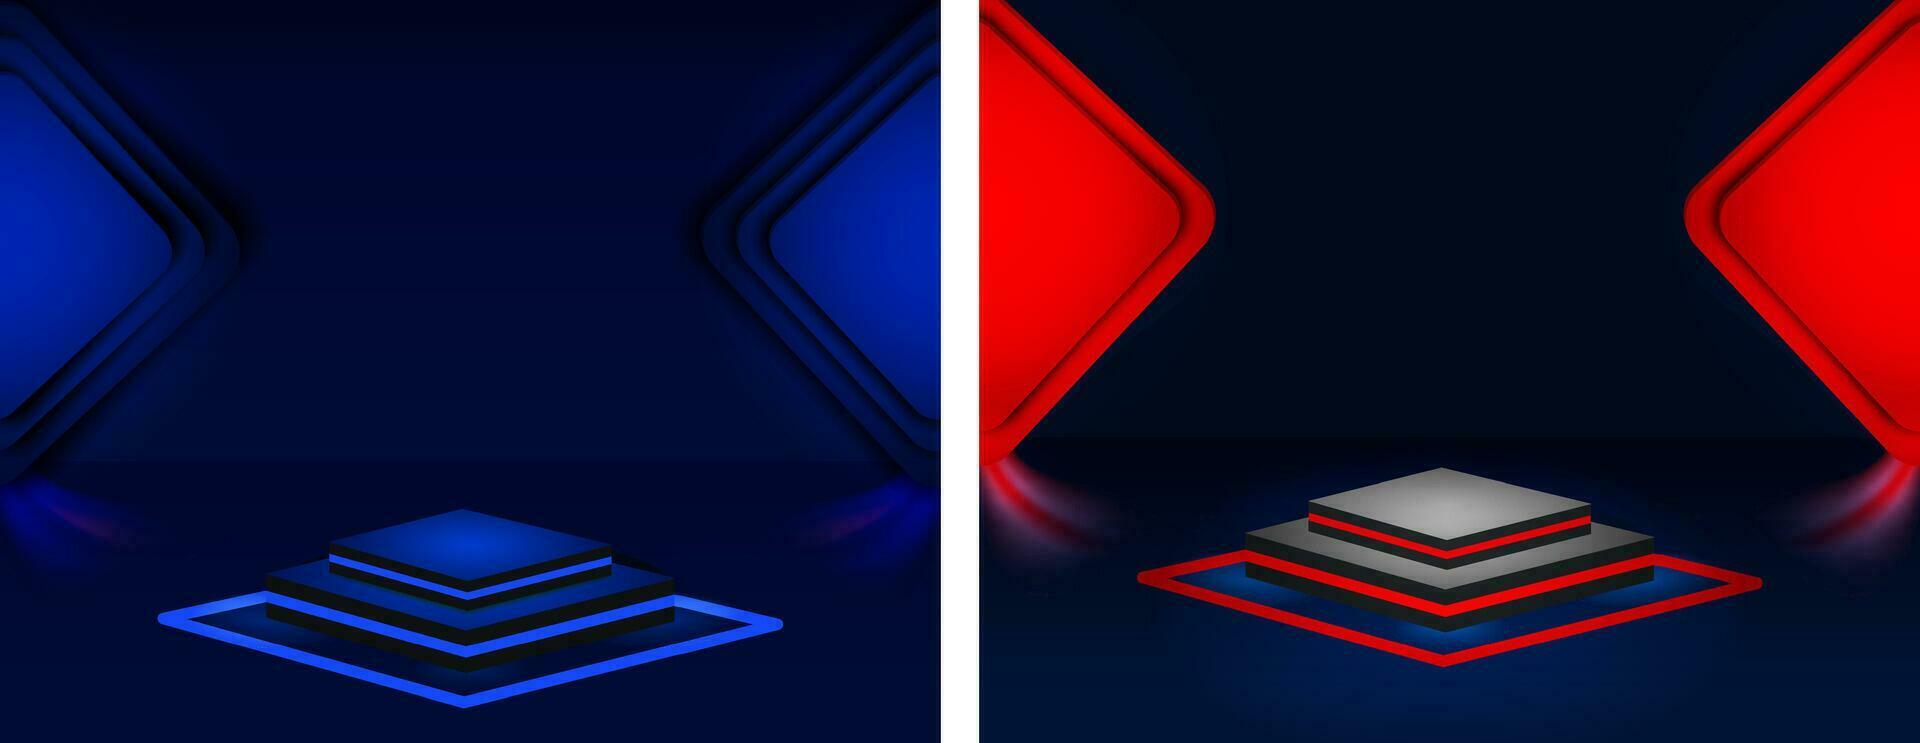 rood zwart blauw kleur technologie dynamisch studio reeks 3d effect vector behang en banier achtergrond ontwerp, twee verschillend gekleurde abstract achtergronden met een rood en blauw plein